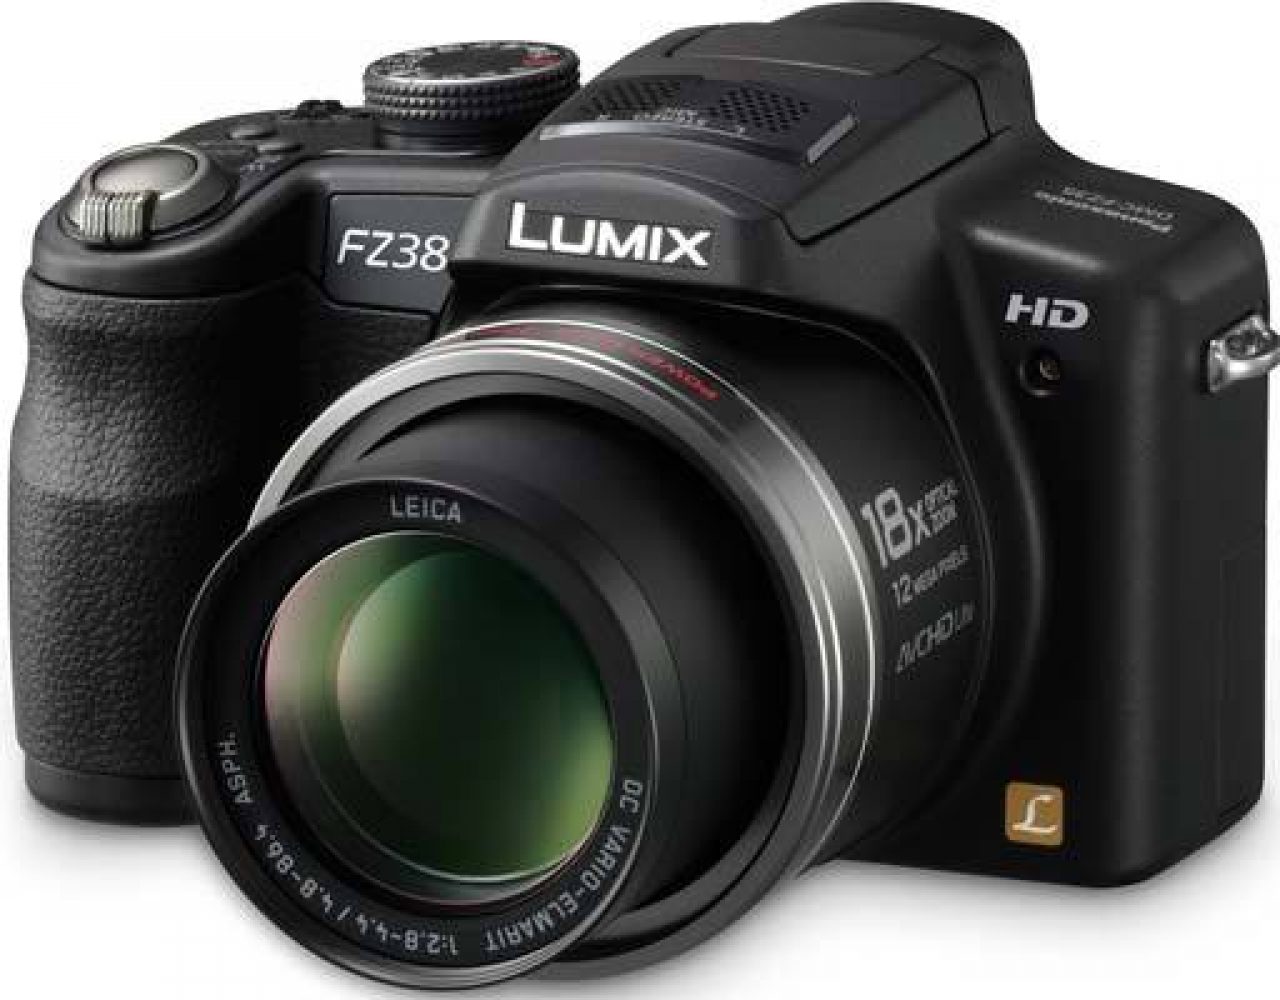 Panasonic Lumix DMC-FZ38 Review | Photography Blog